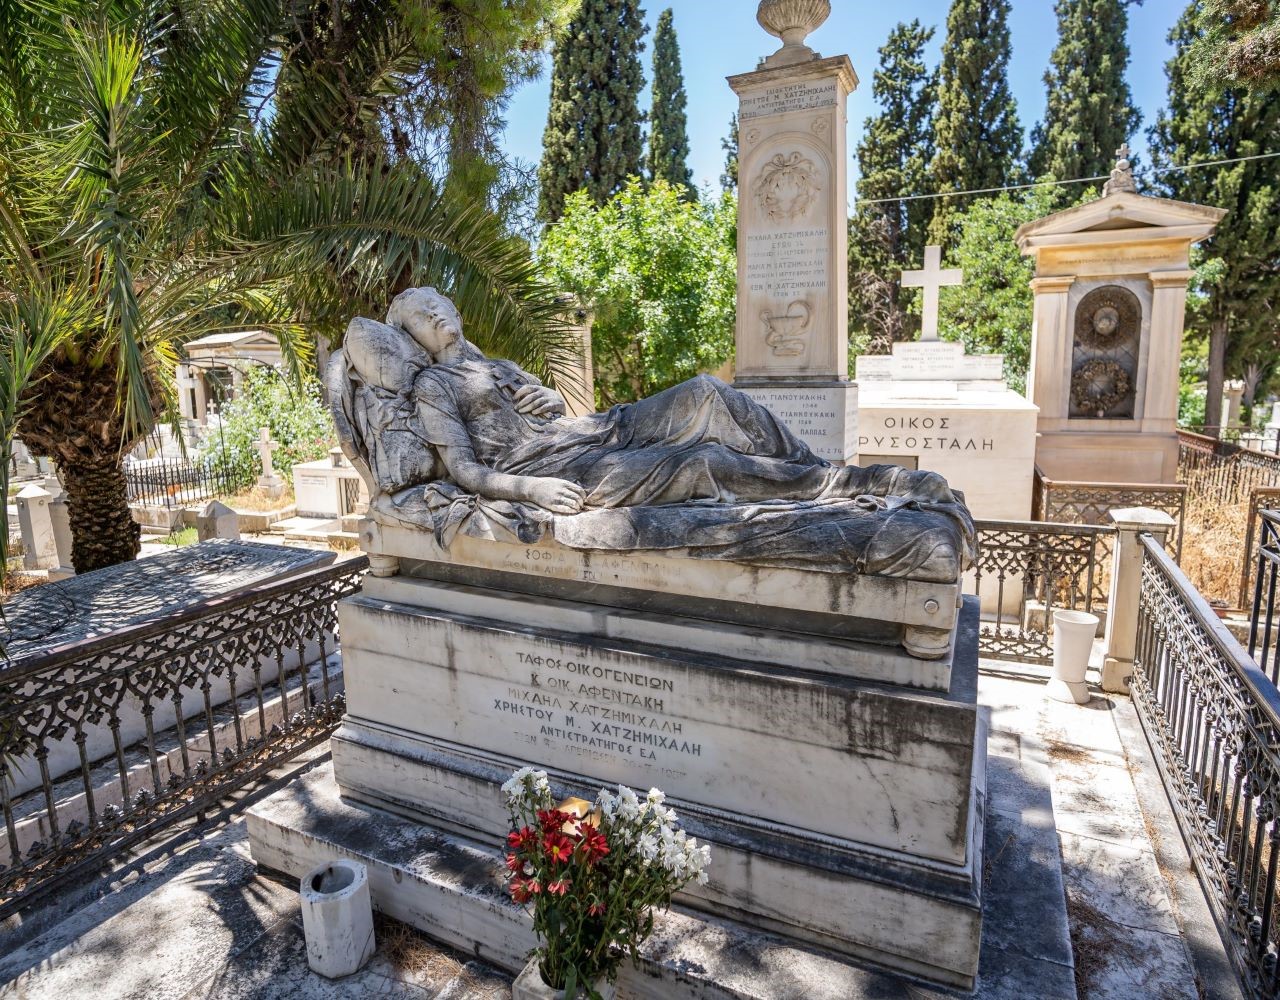 Α’ Νεκροταφείο Αθηνών: Το υπαίθριο μουσείο που πρέπει να επισκεφτείς